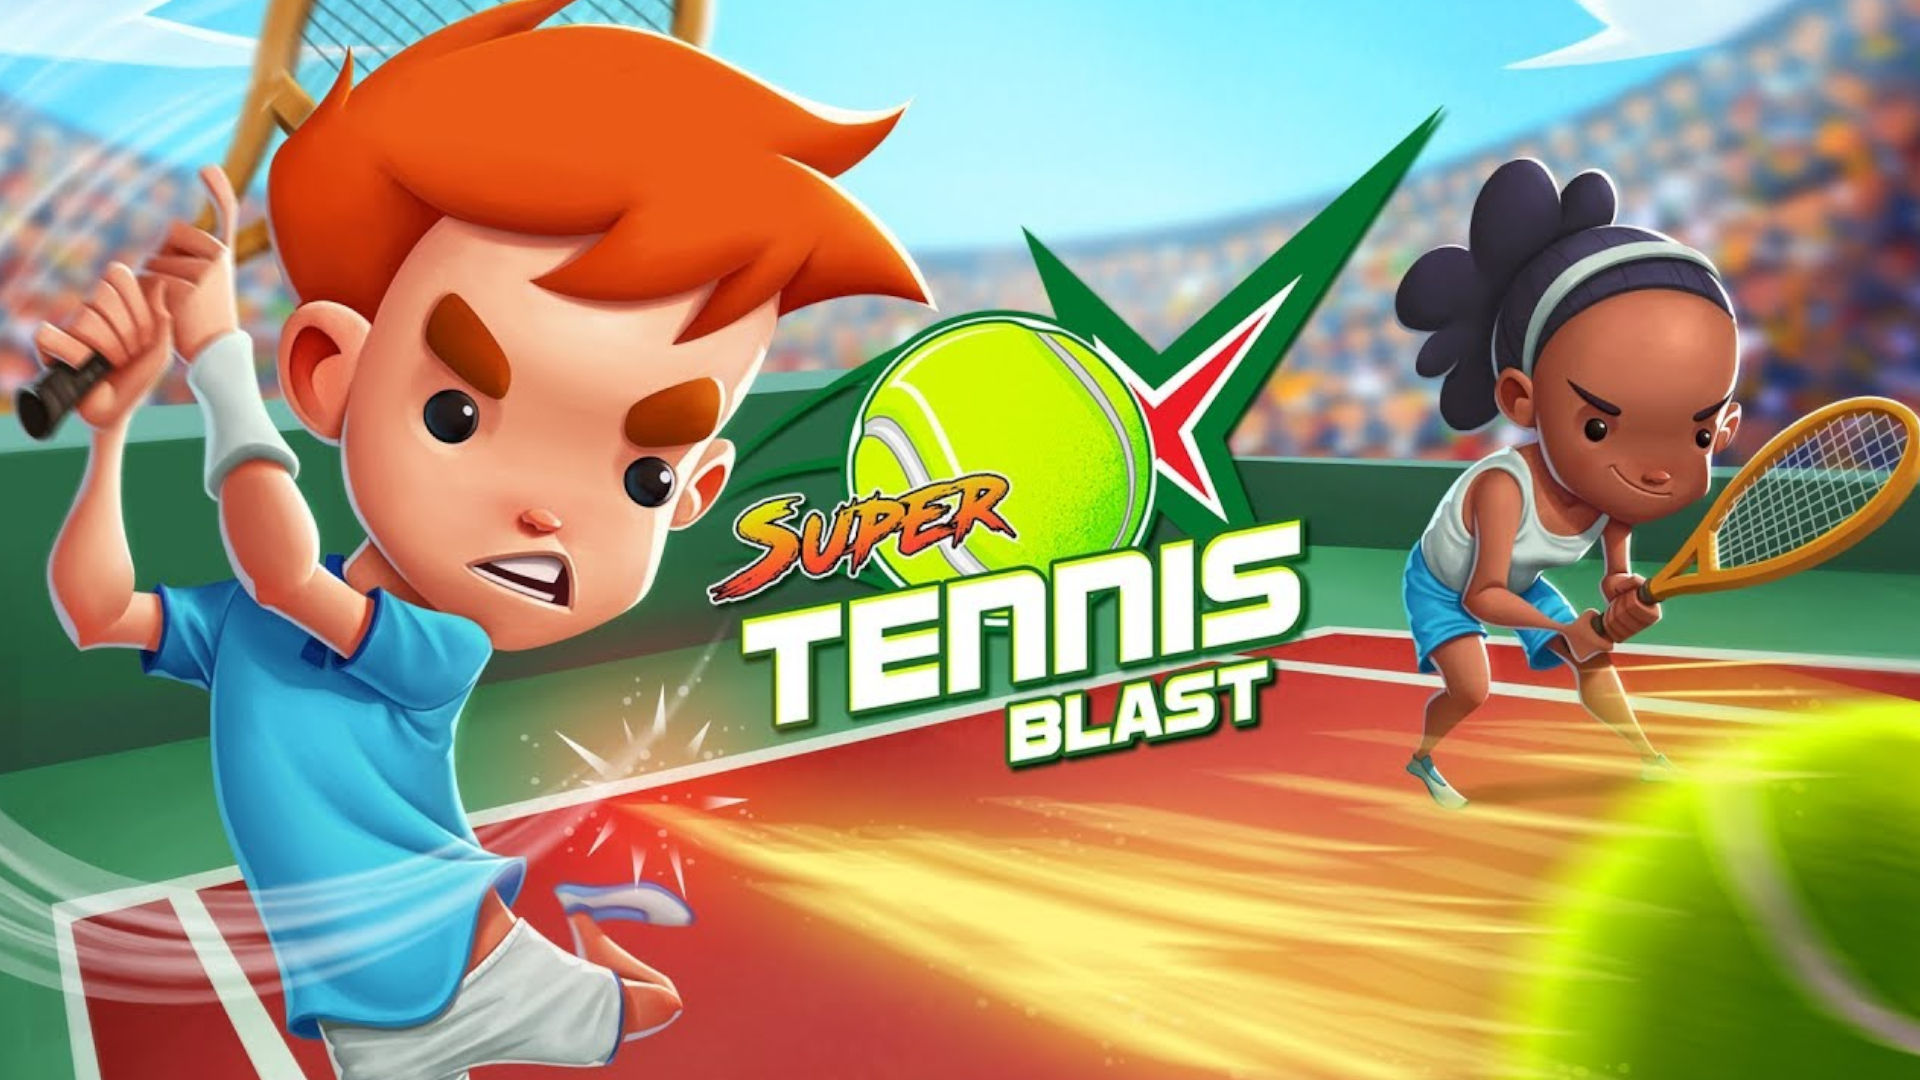 Schlüsselgrafik für Super Tennis Blast, eines der Switch-Arcade-Tennisspiele